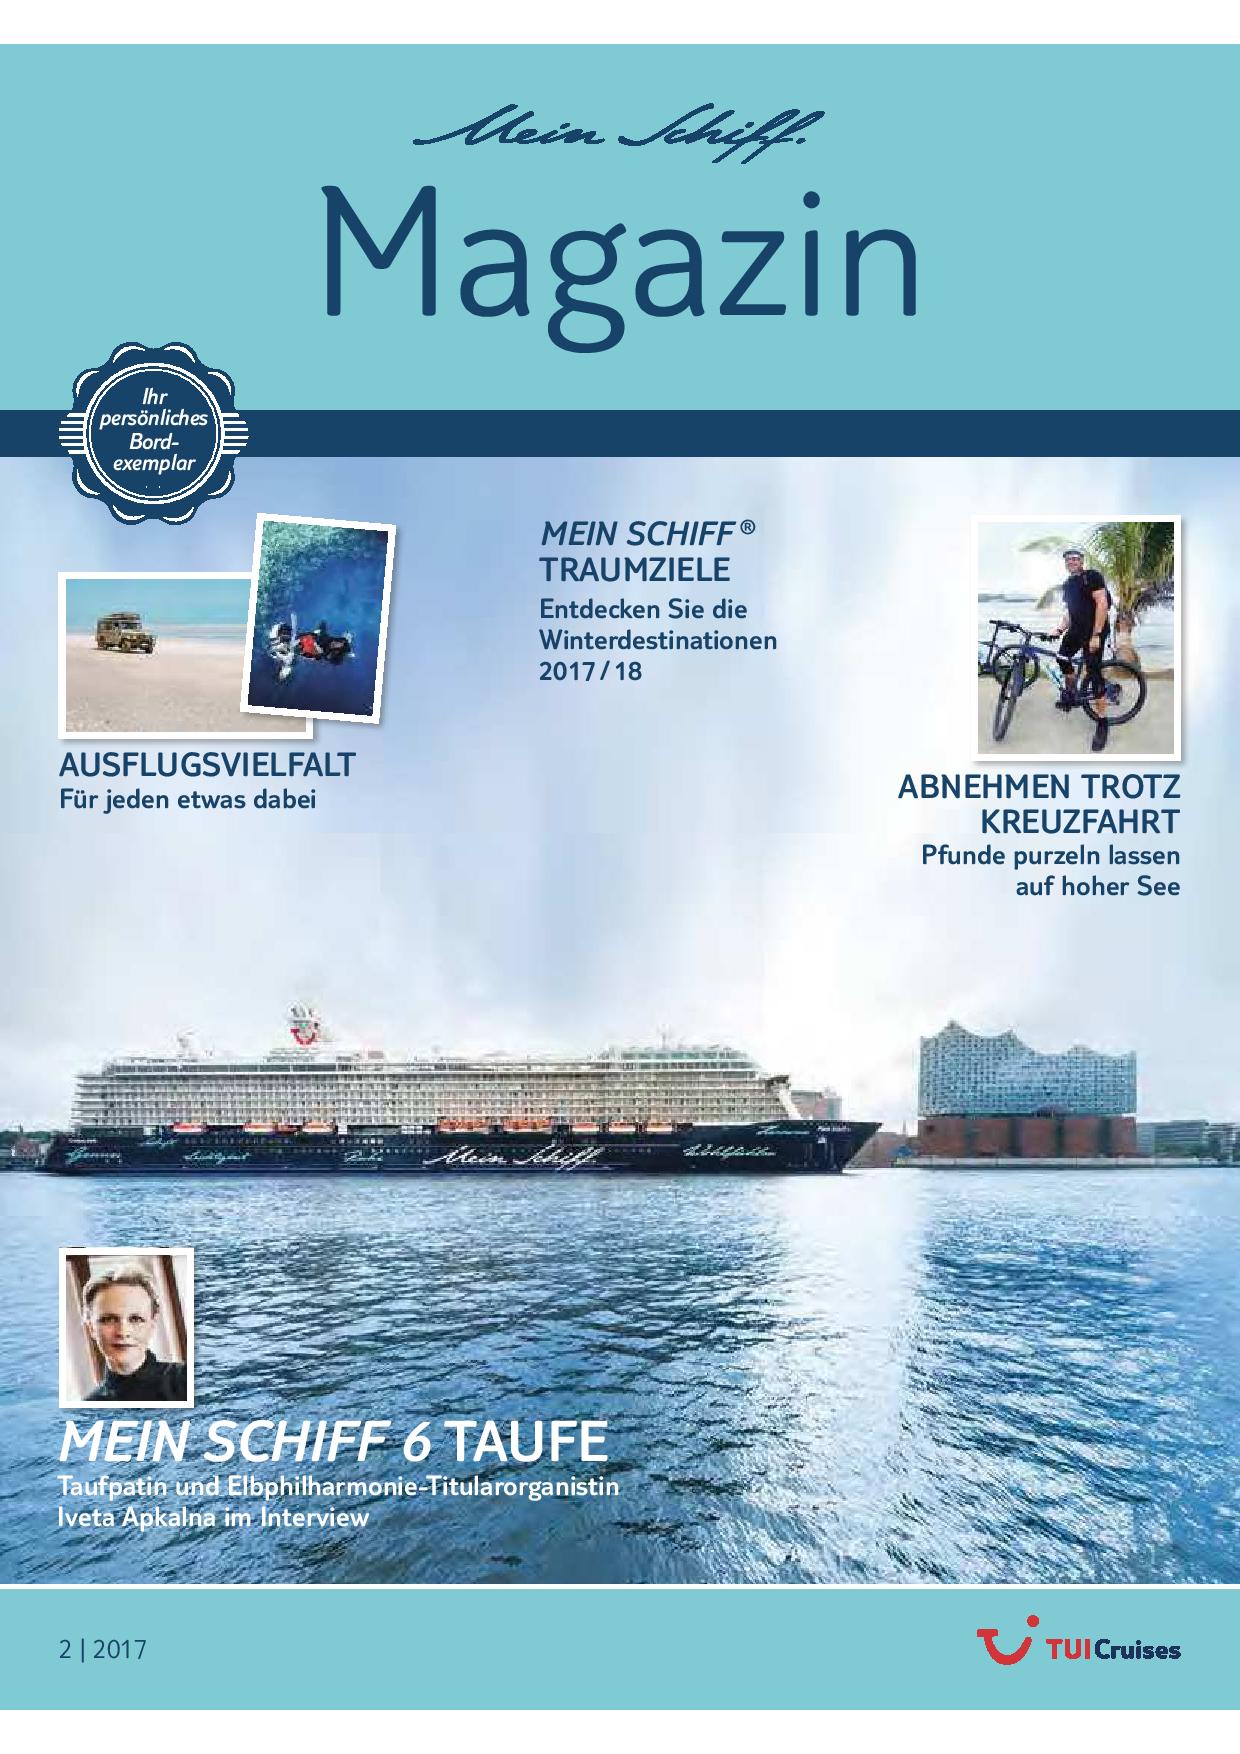 Das Mein Schiff Magazin 2/2017